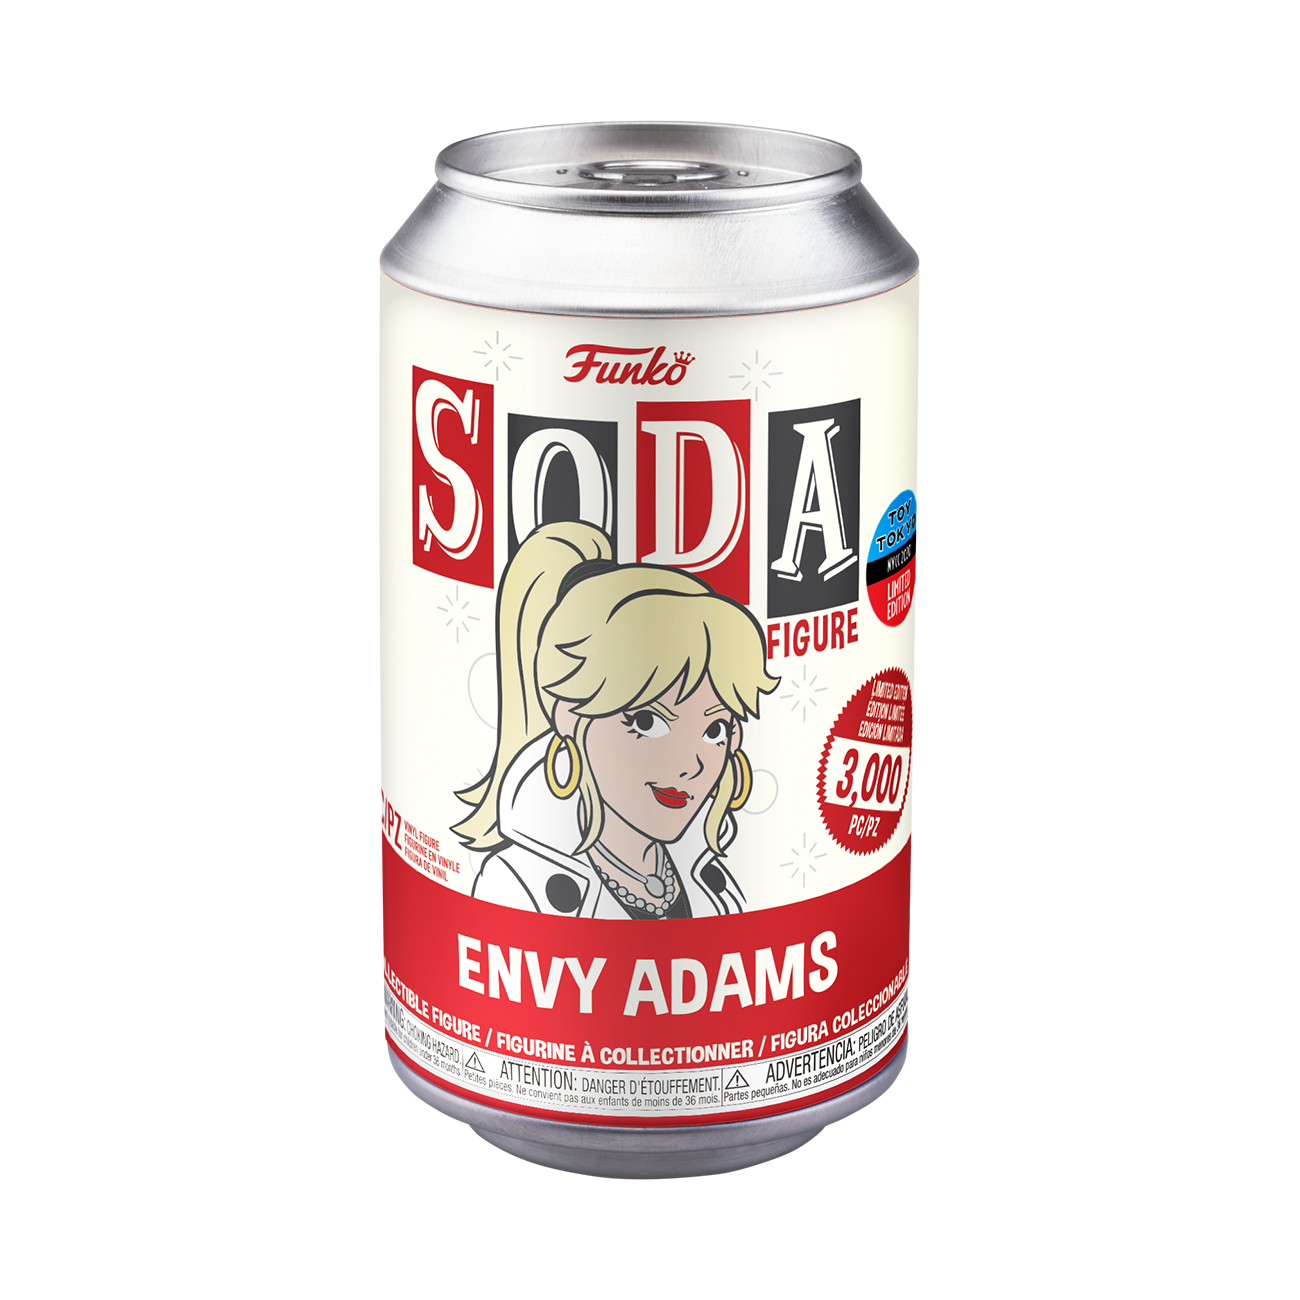 Scott Pilgrim - Envy Addams Vinyl Soda NYCC 2020 SODA